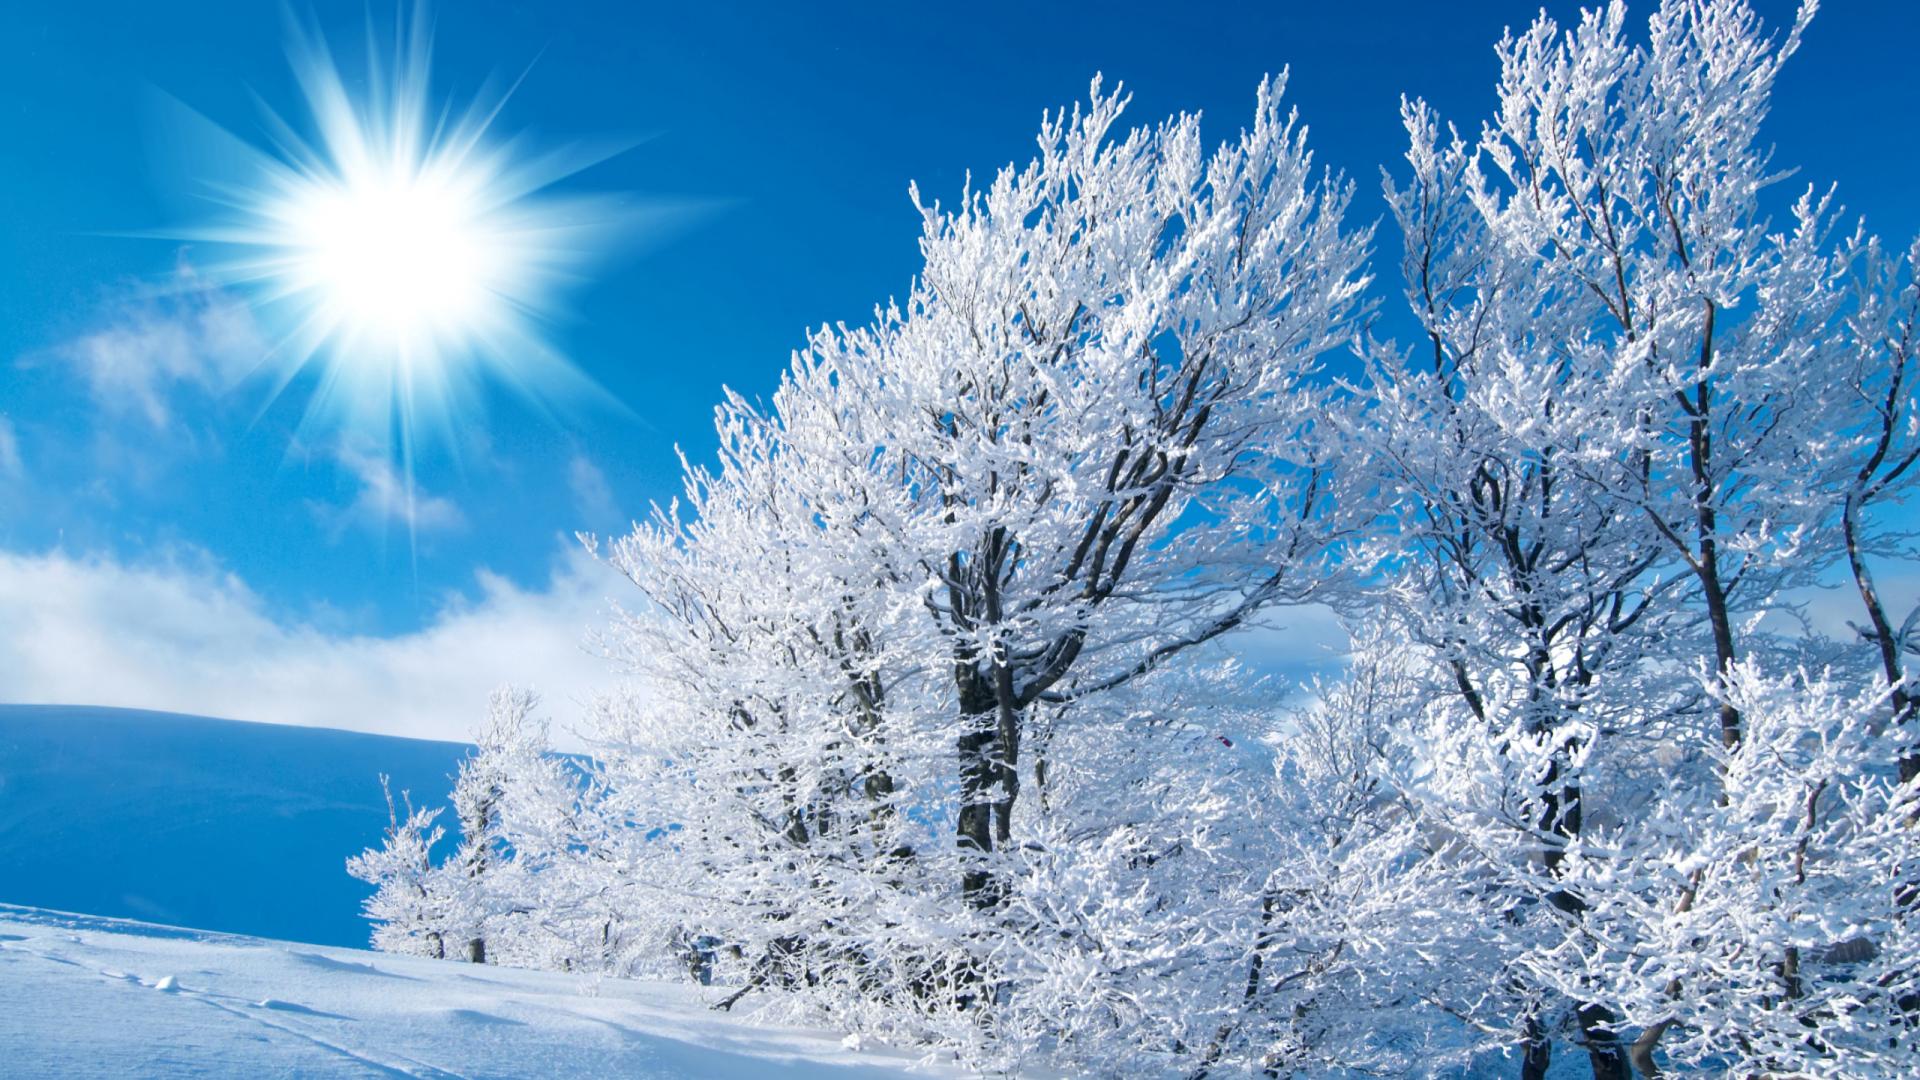 free winter scenes desktop backgrounds #21